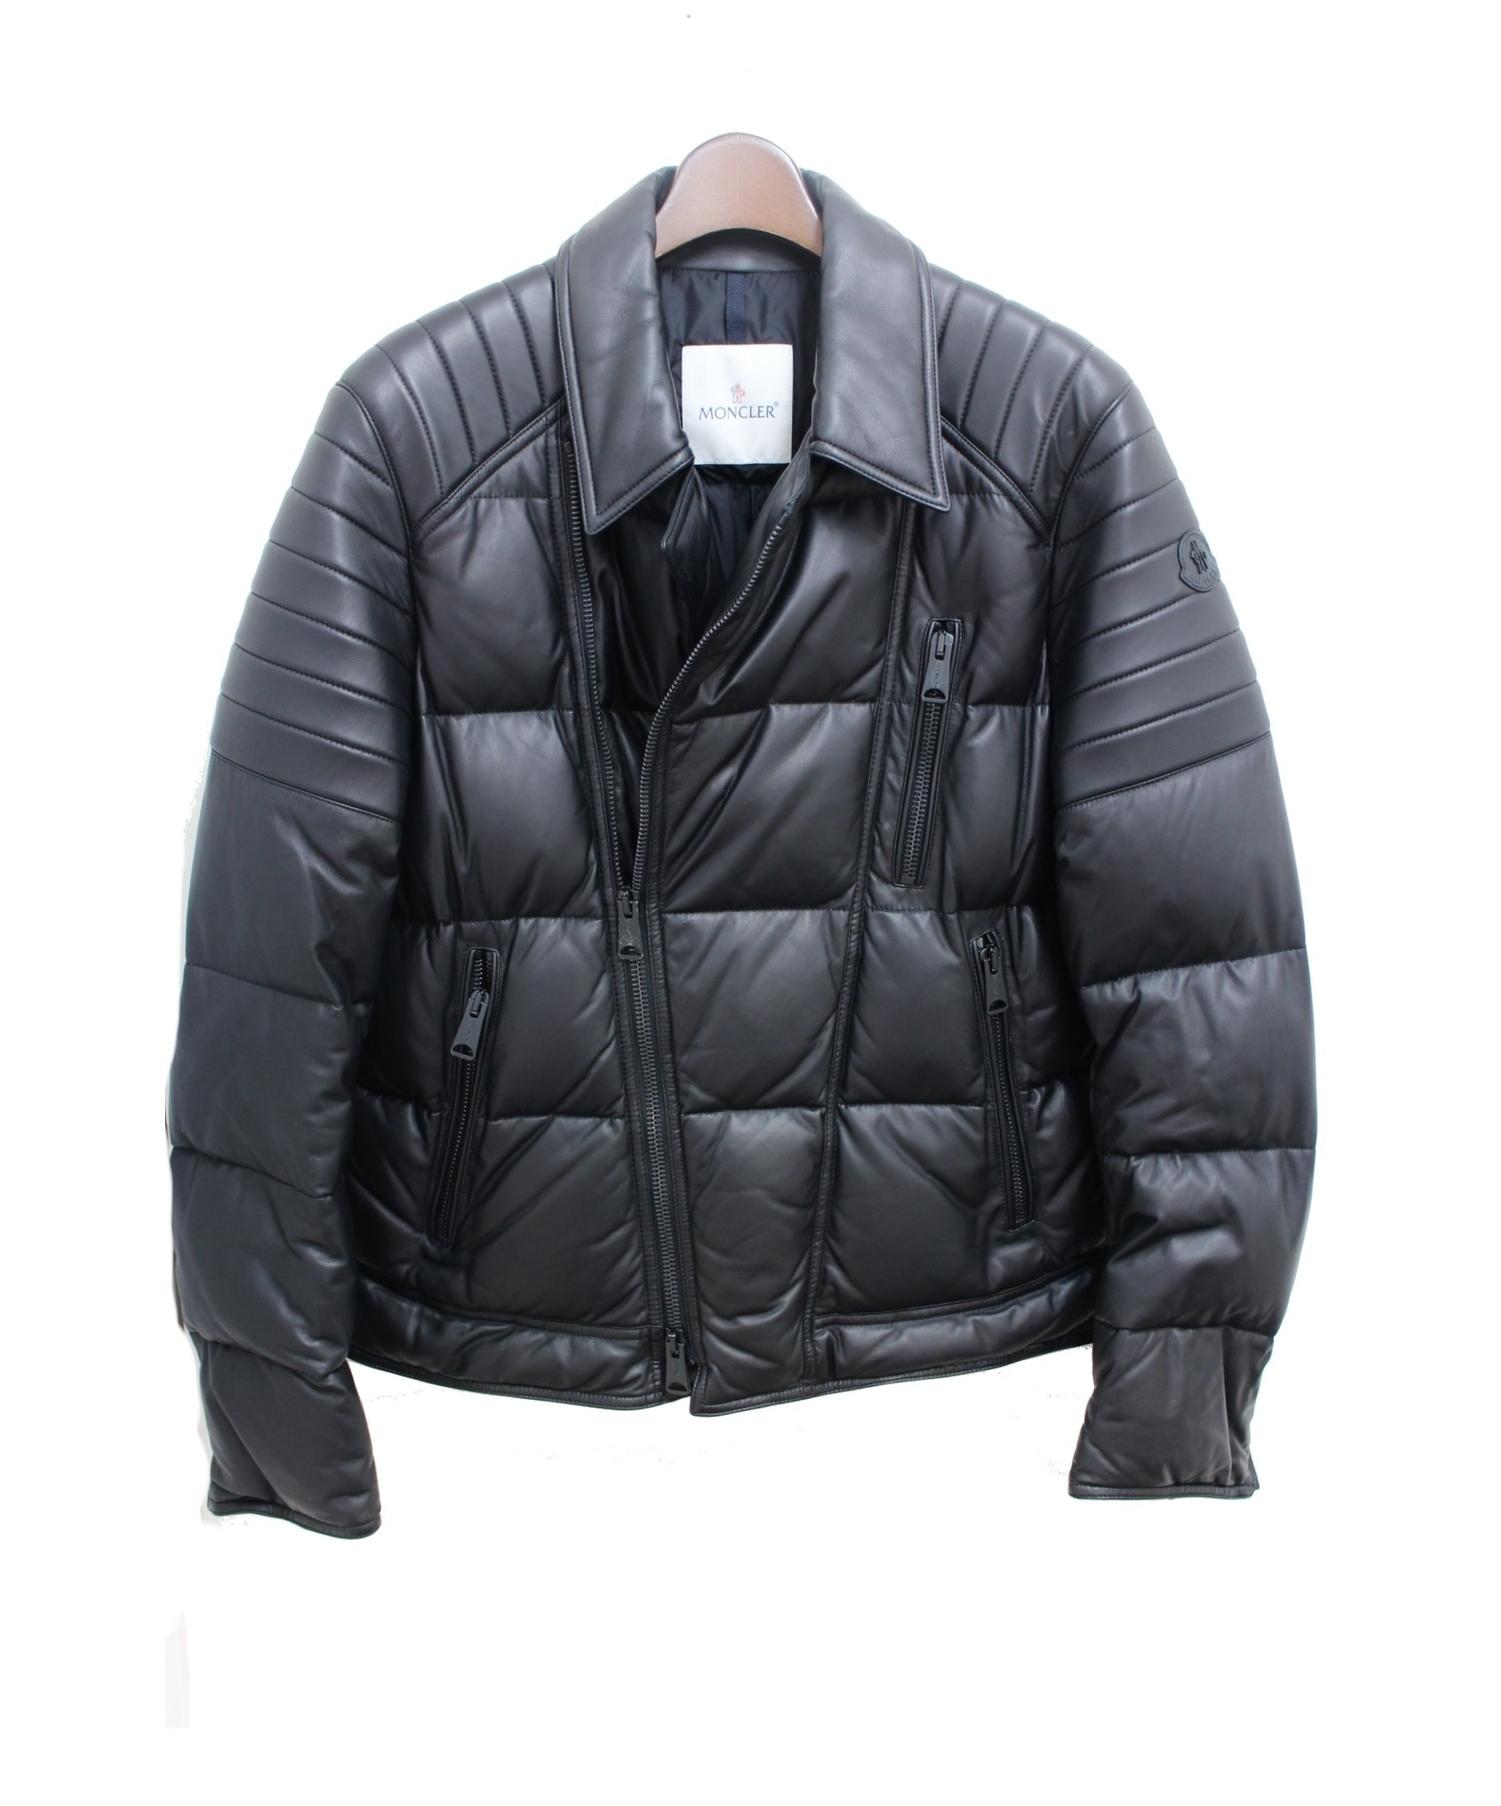 MONCLER (モンクレール) LECLERC/レザーダウンジャケット ブラック サイズ:L 羊革